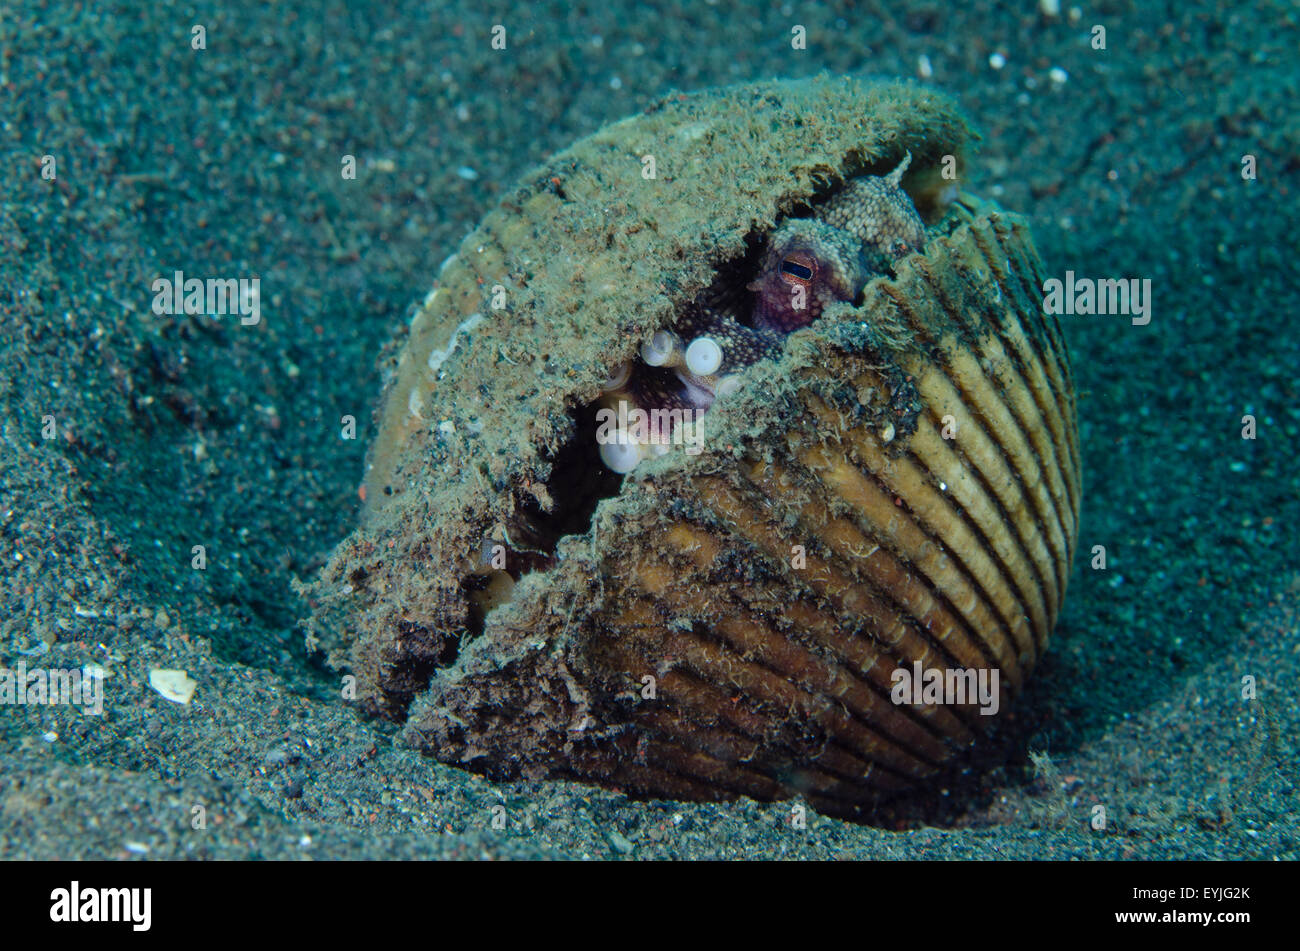 Kokosnuss Oktopus, Amphioctopus Marginatus, lebt in einer verlassenen Clam-Shell Puri Jati, Paci Seririt, Nord Bali, Indonesien Stockfoto